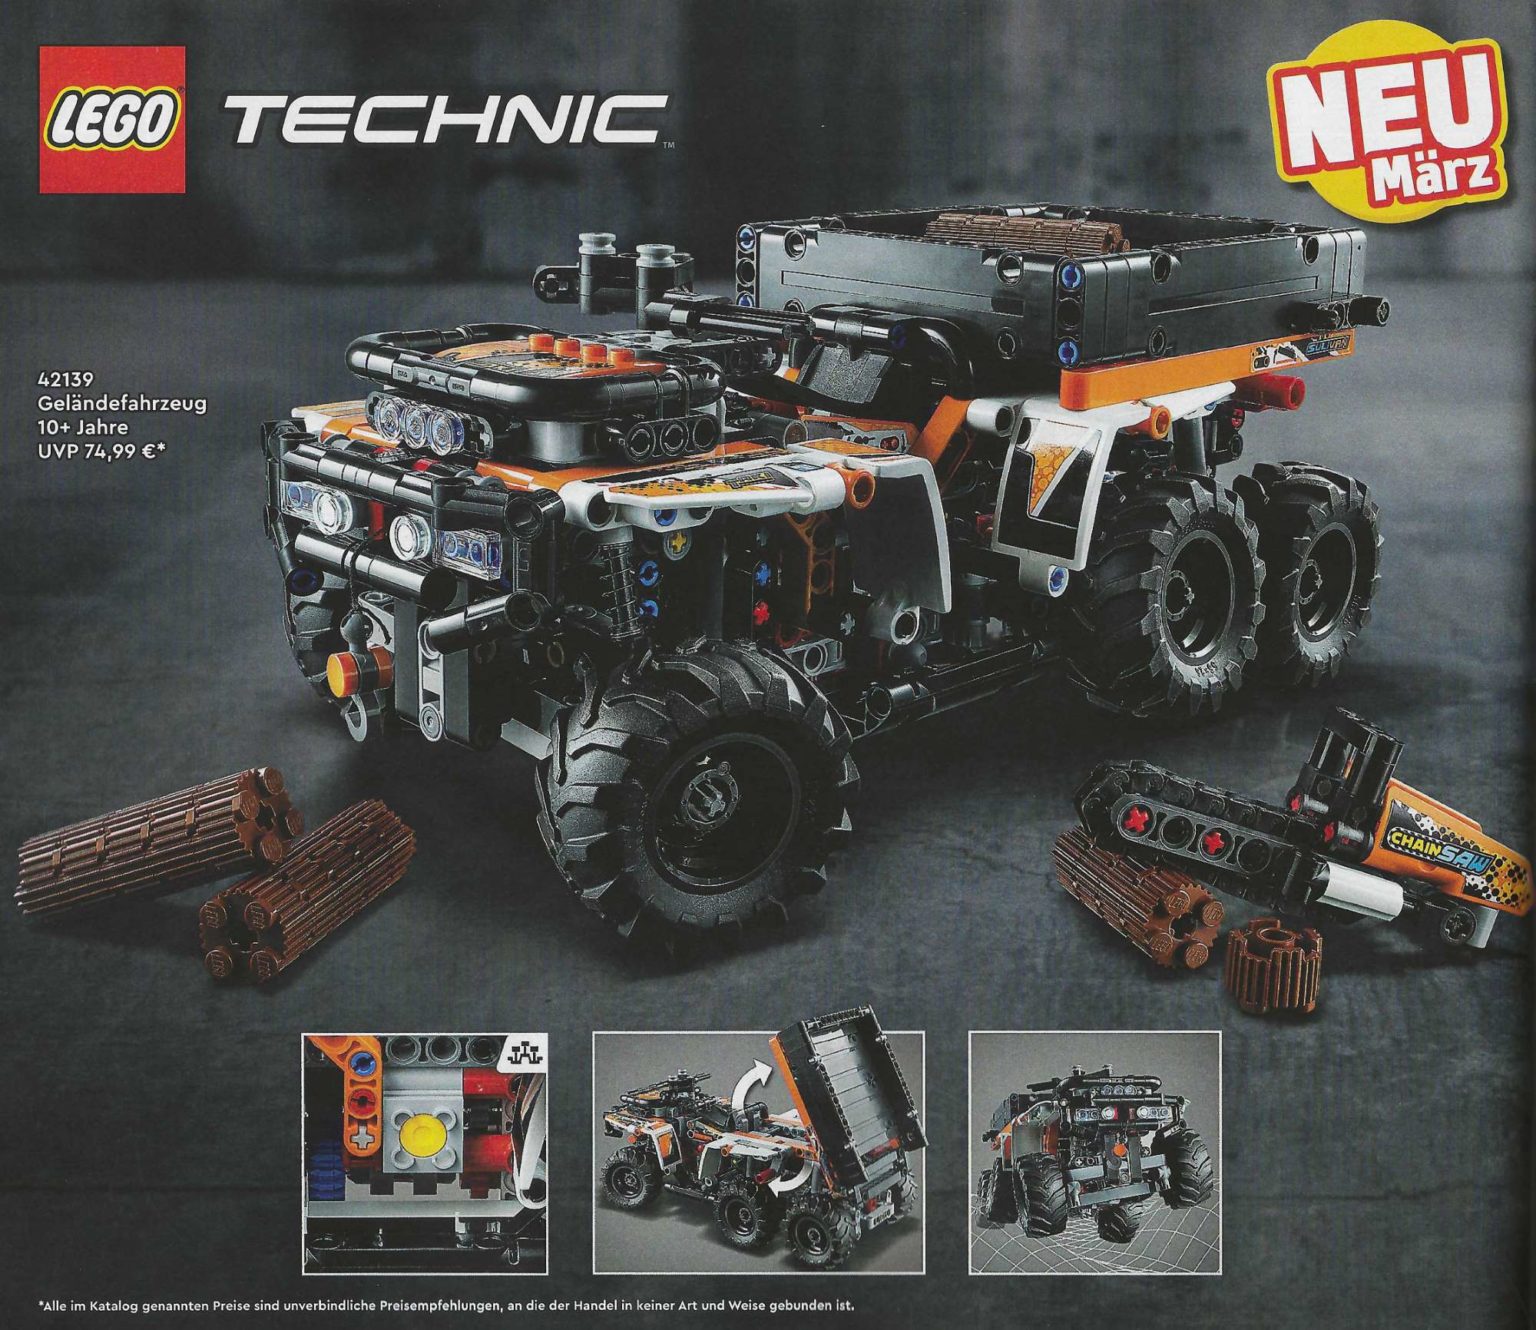 LEGO Technic John Deere (42136) Tractor Brick 9620R The - Revealed Fan 4WD